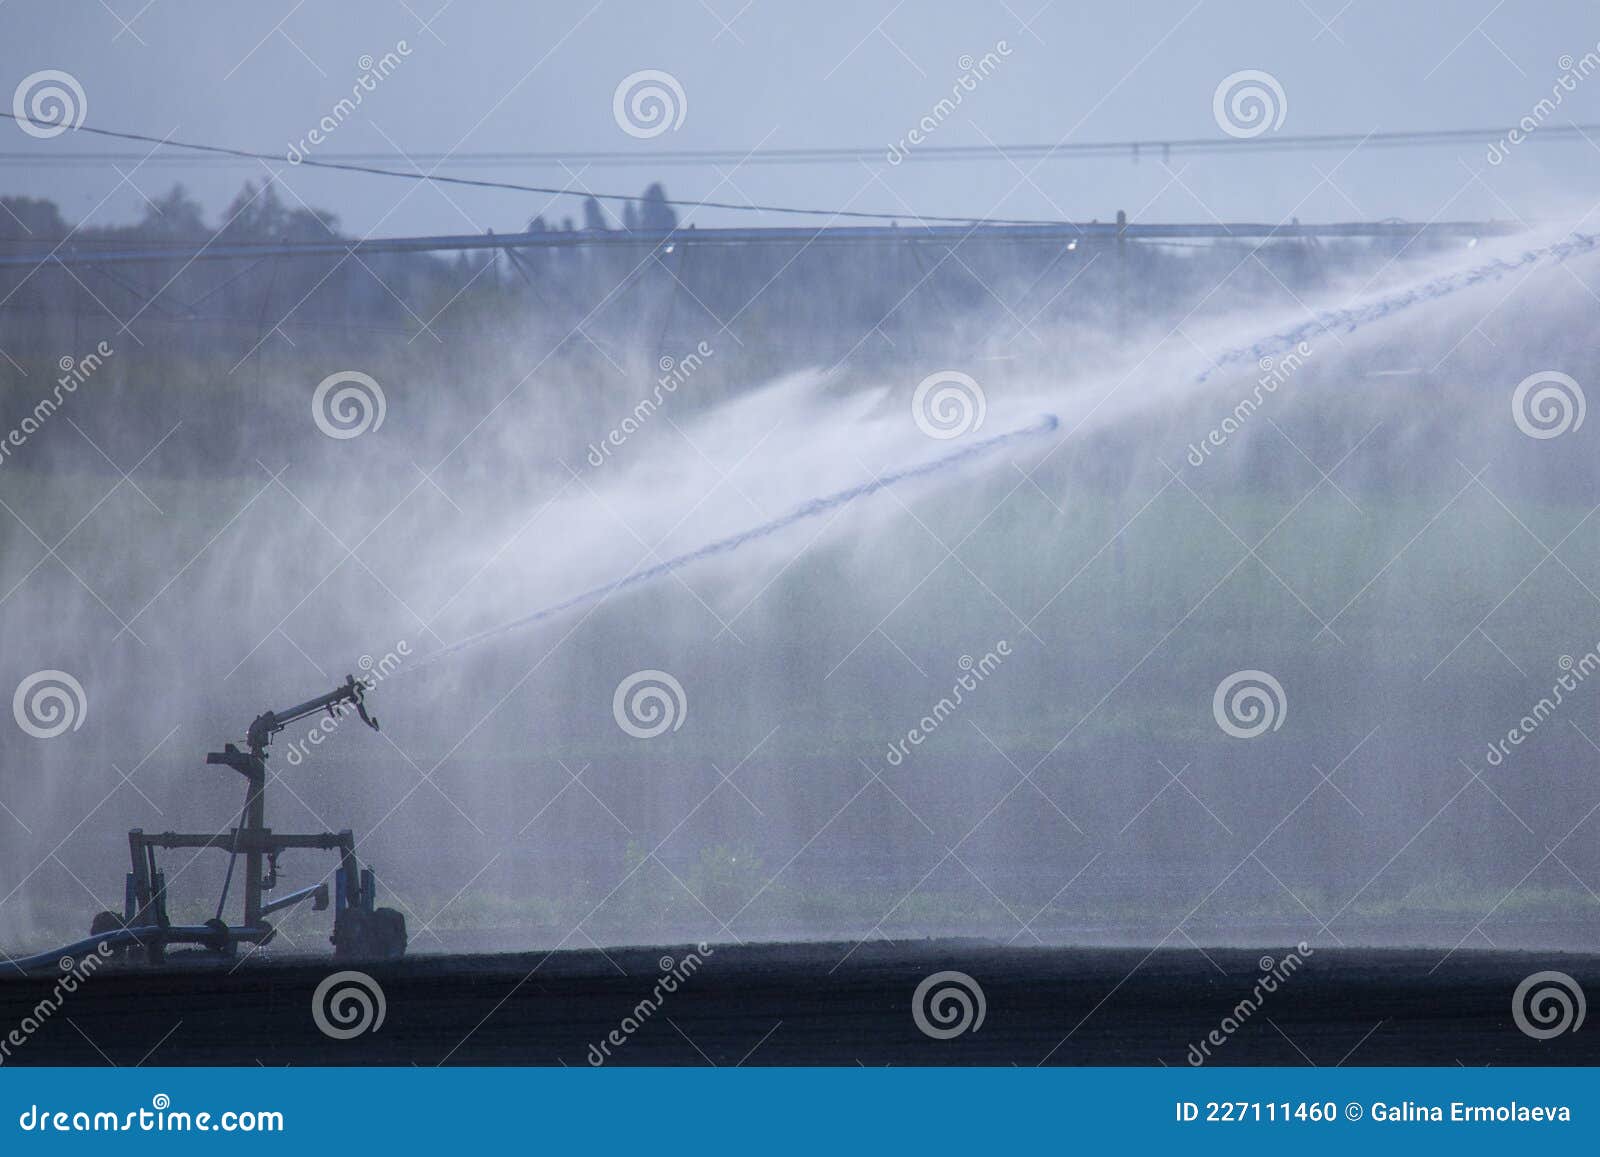 irrigation plant irrigates fields in summer